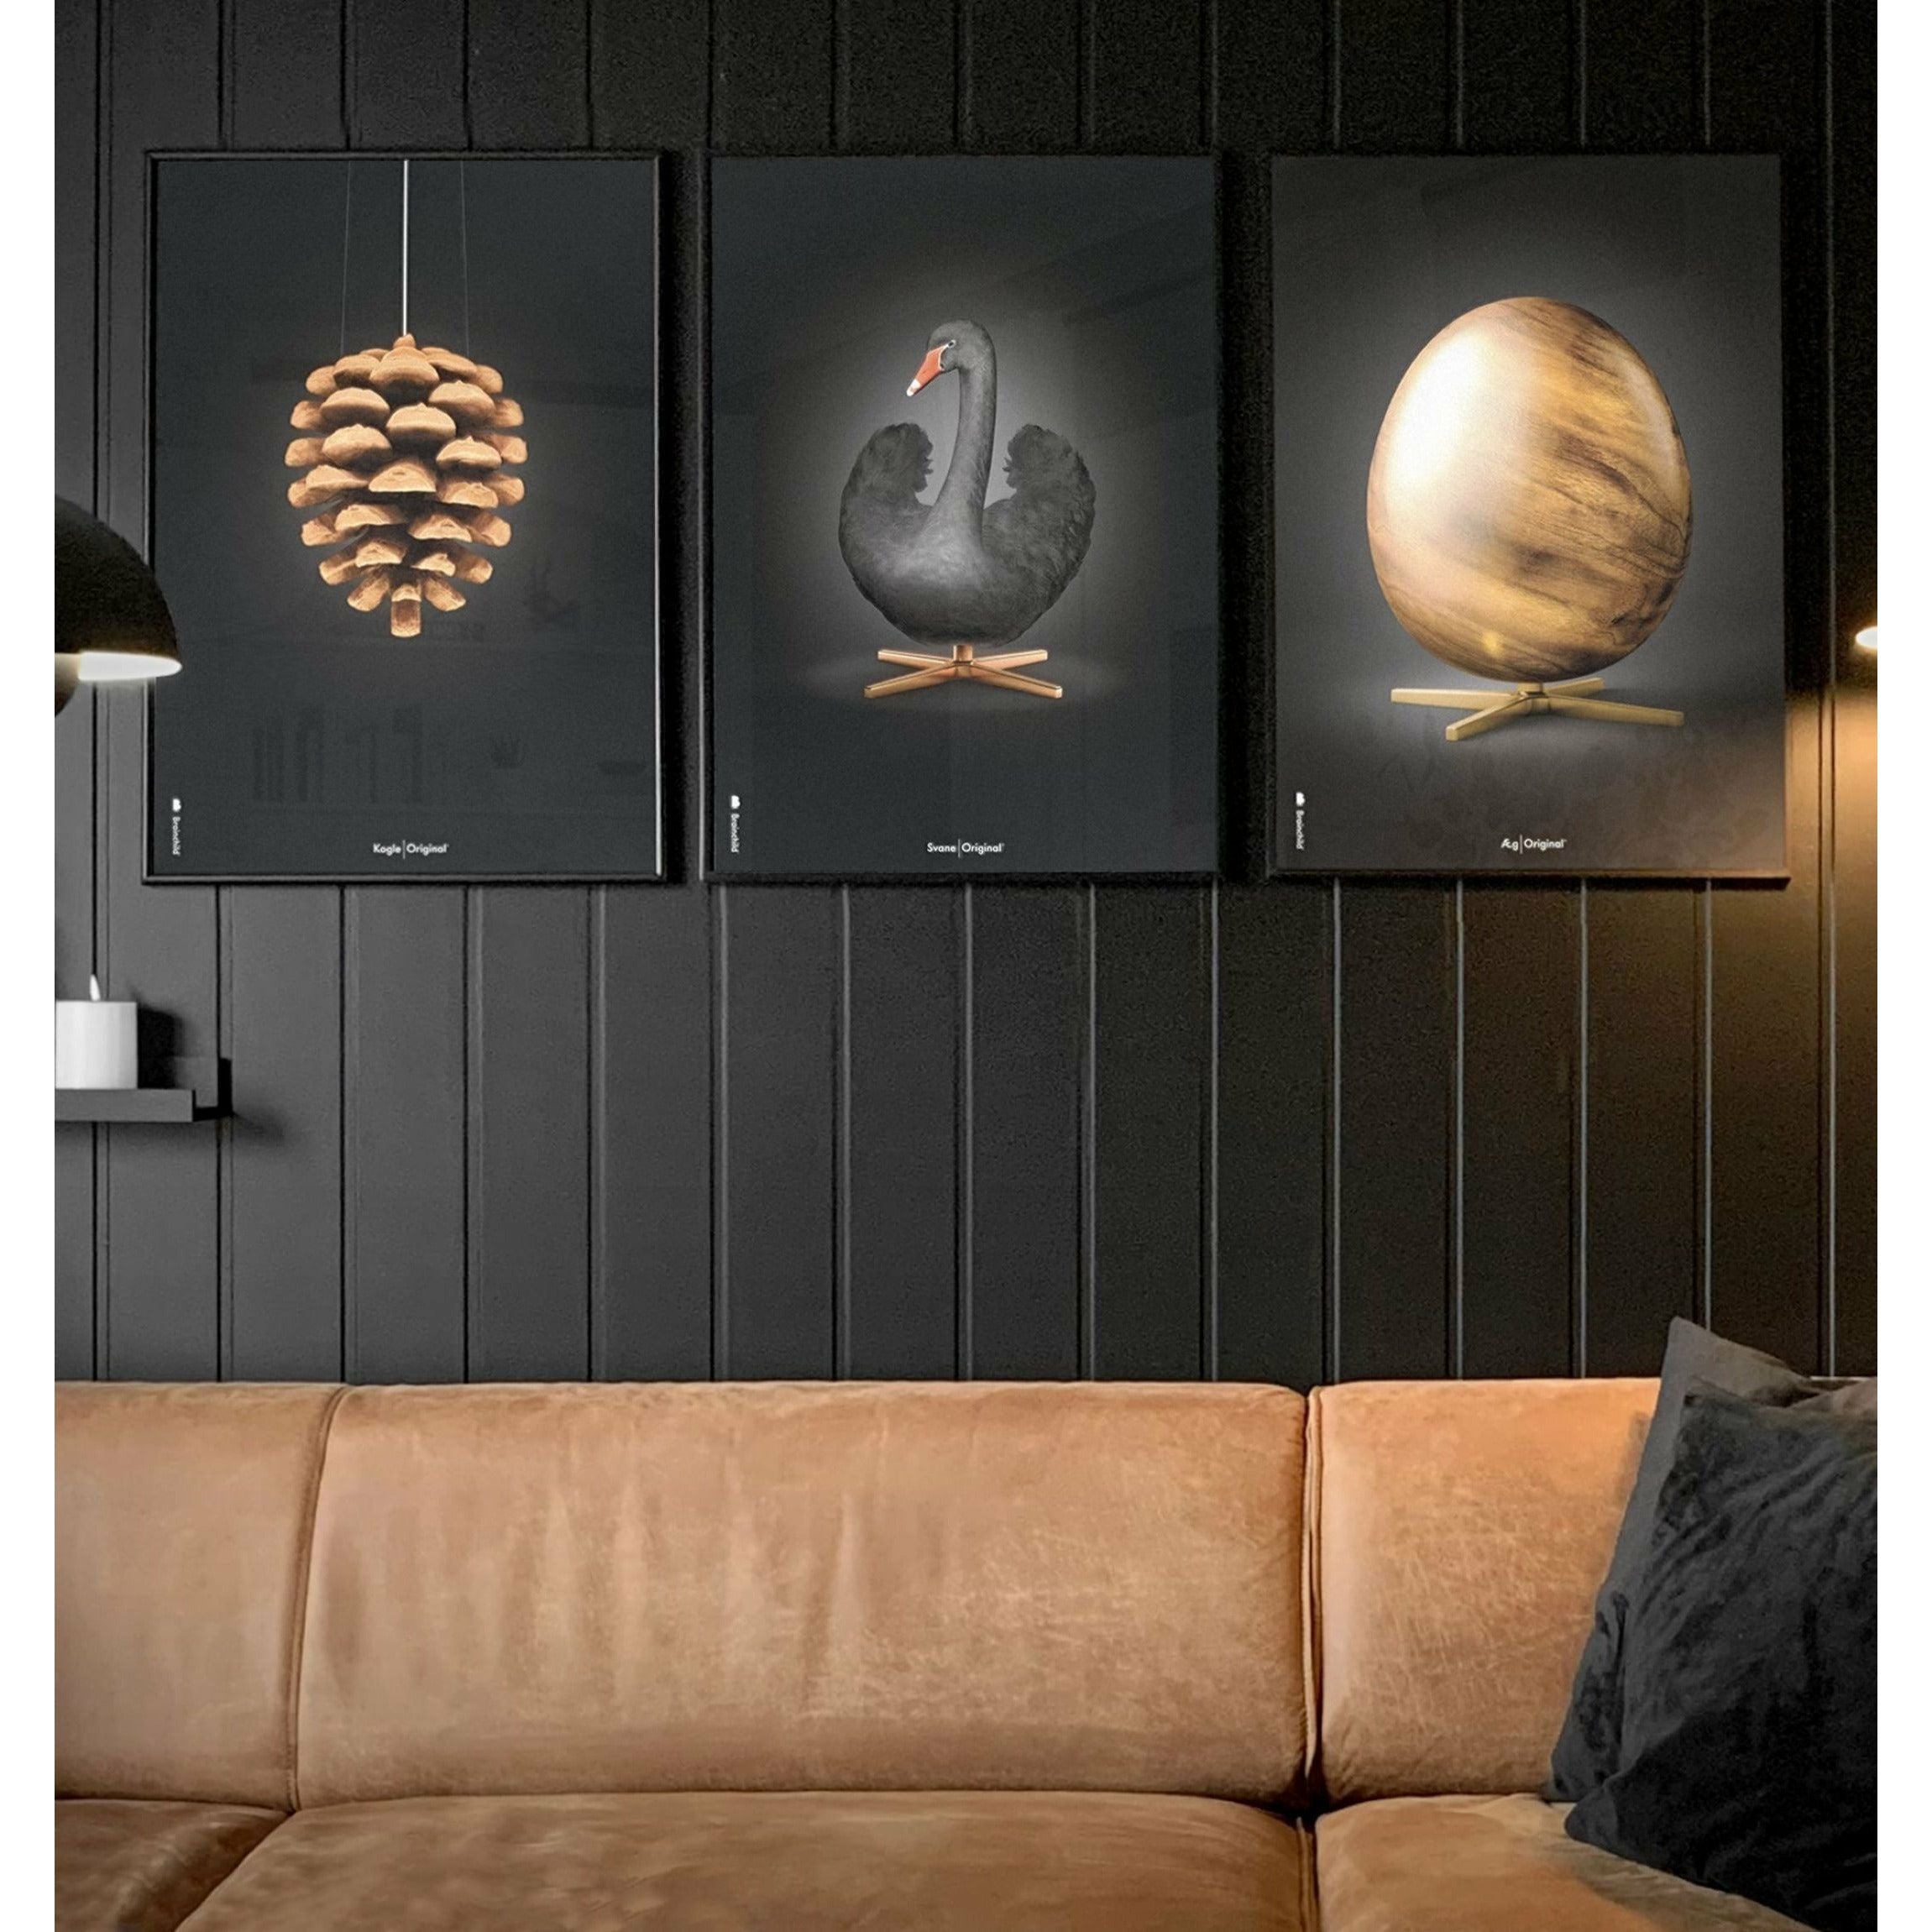 Brainchild Egg Figures Poster, Frame Made Of Light Wood 50x70 Cm, Black